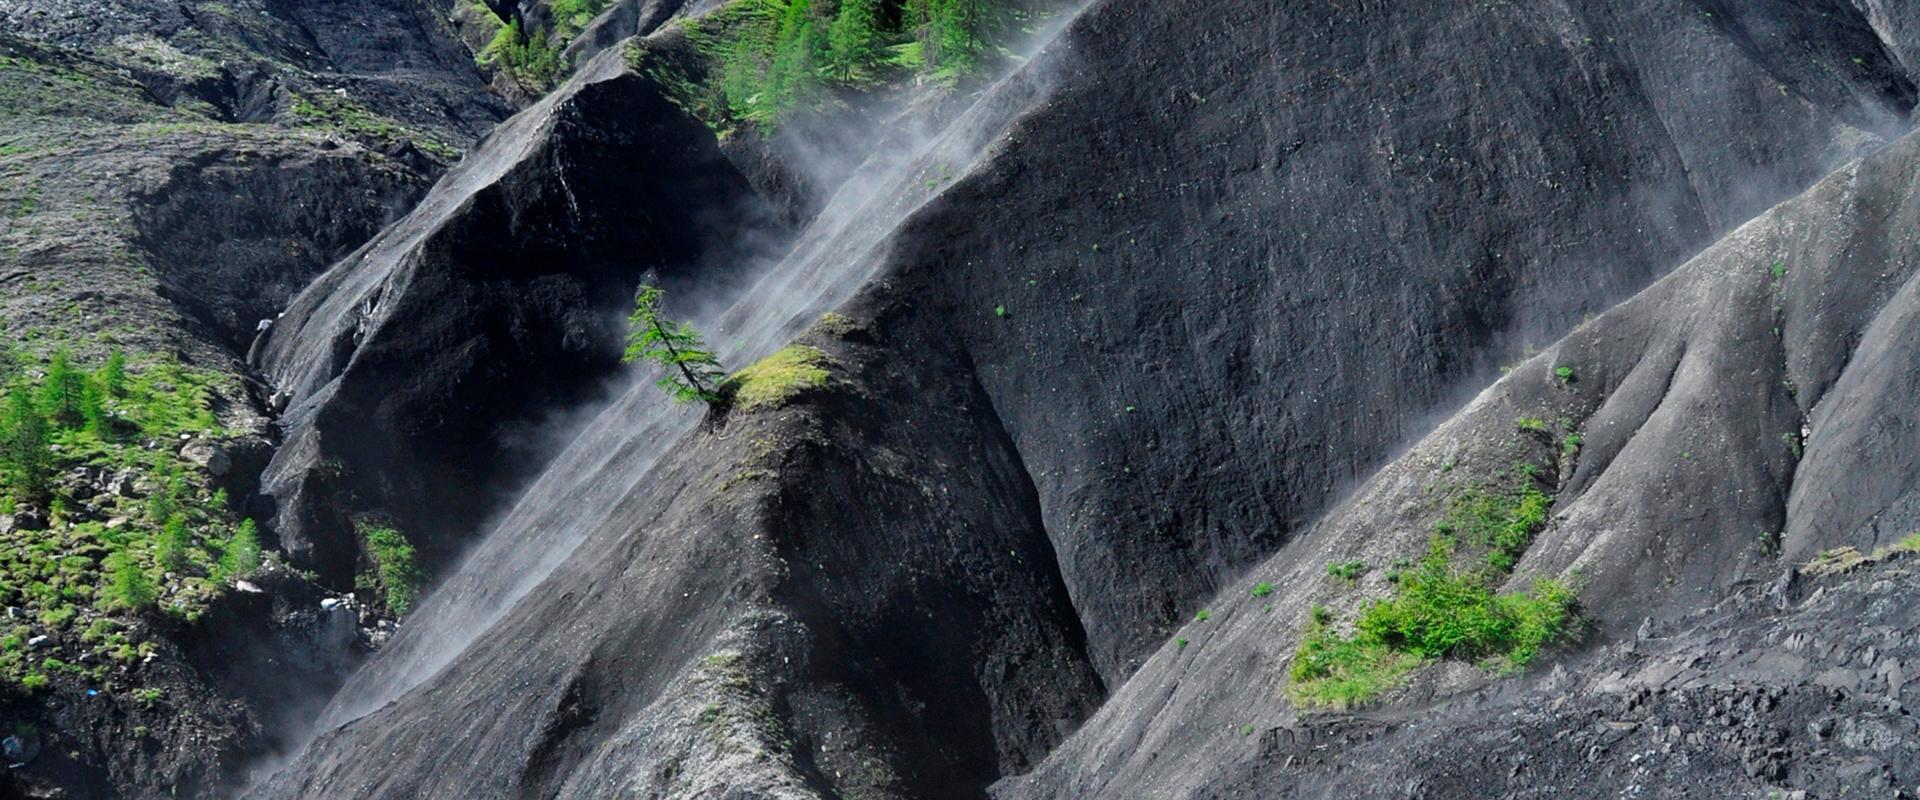 The Super-Sauze landslide, Enchastrayes